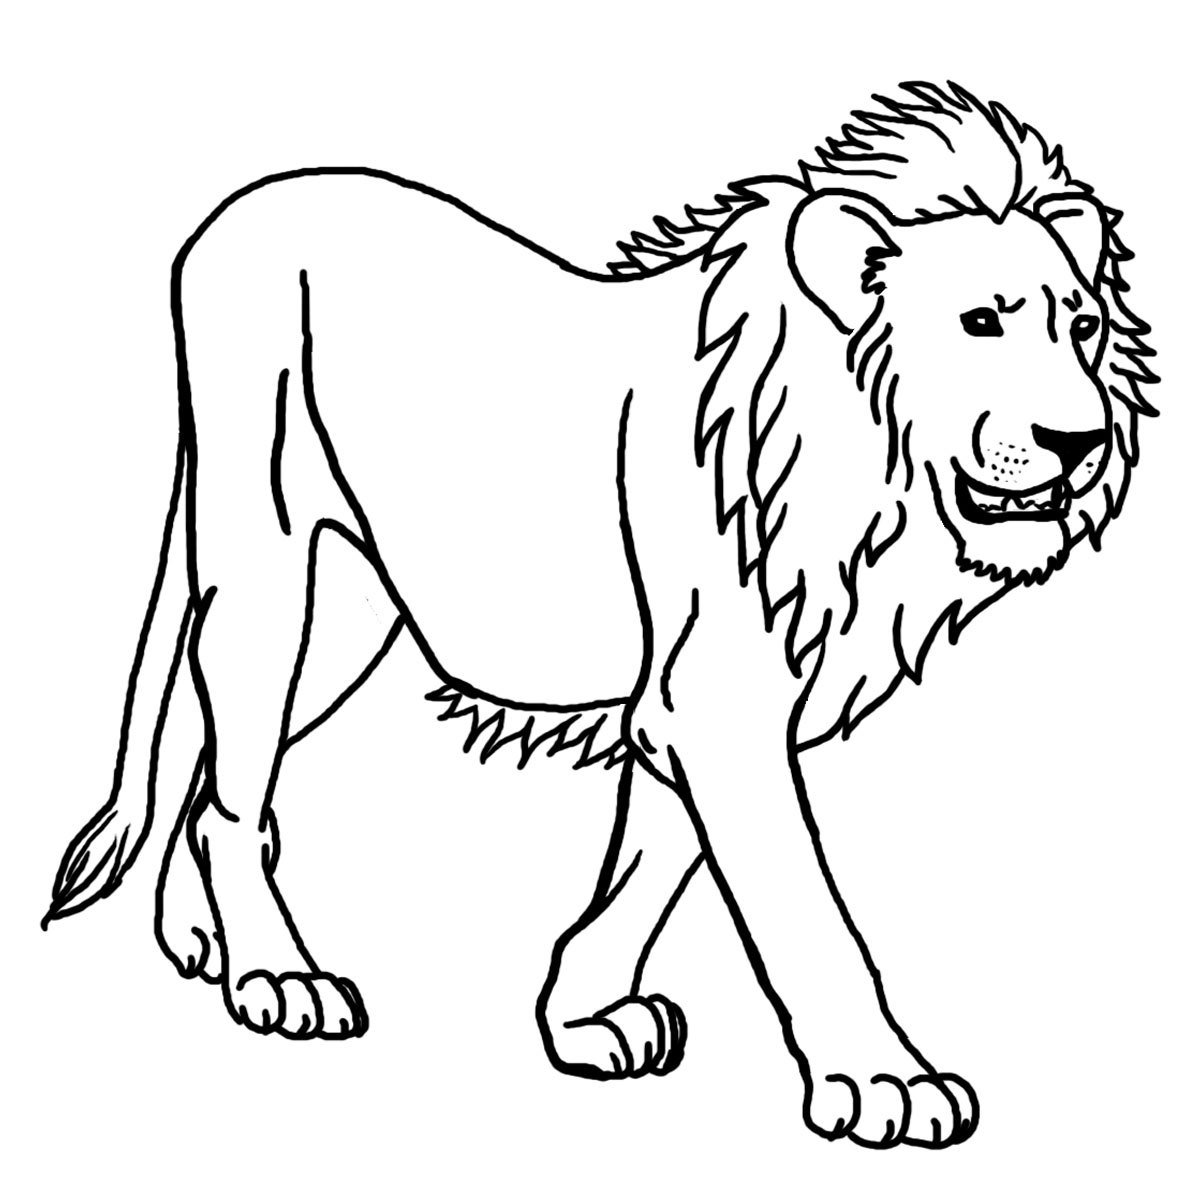 Dibujos de leones salvajes para imprimir y pintar | Colorear imágenes